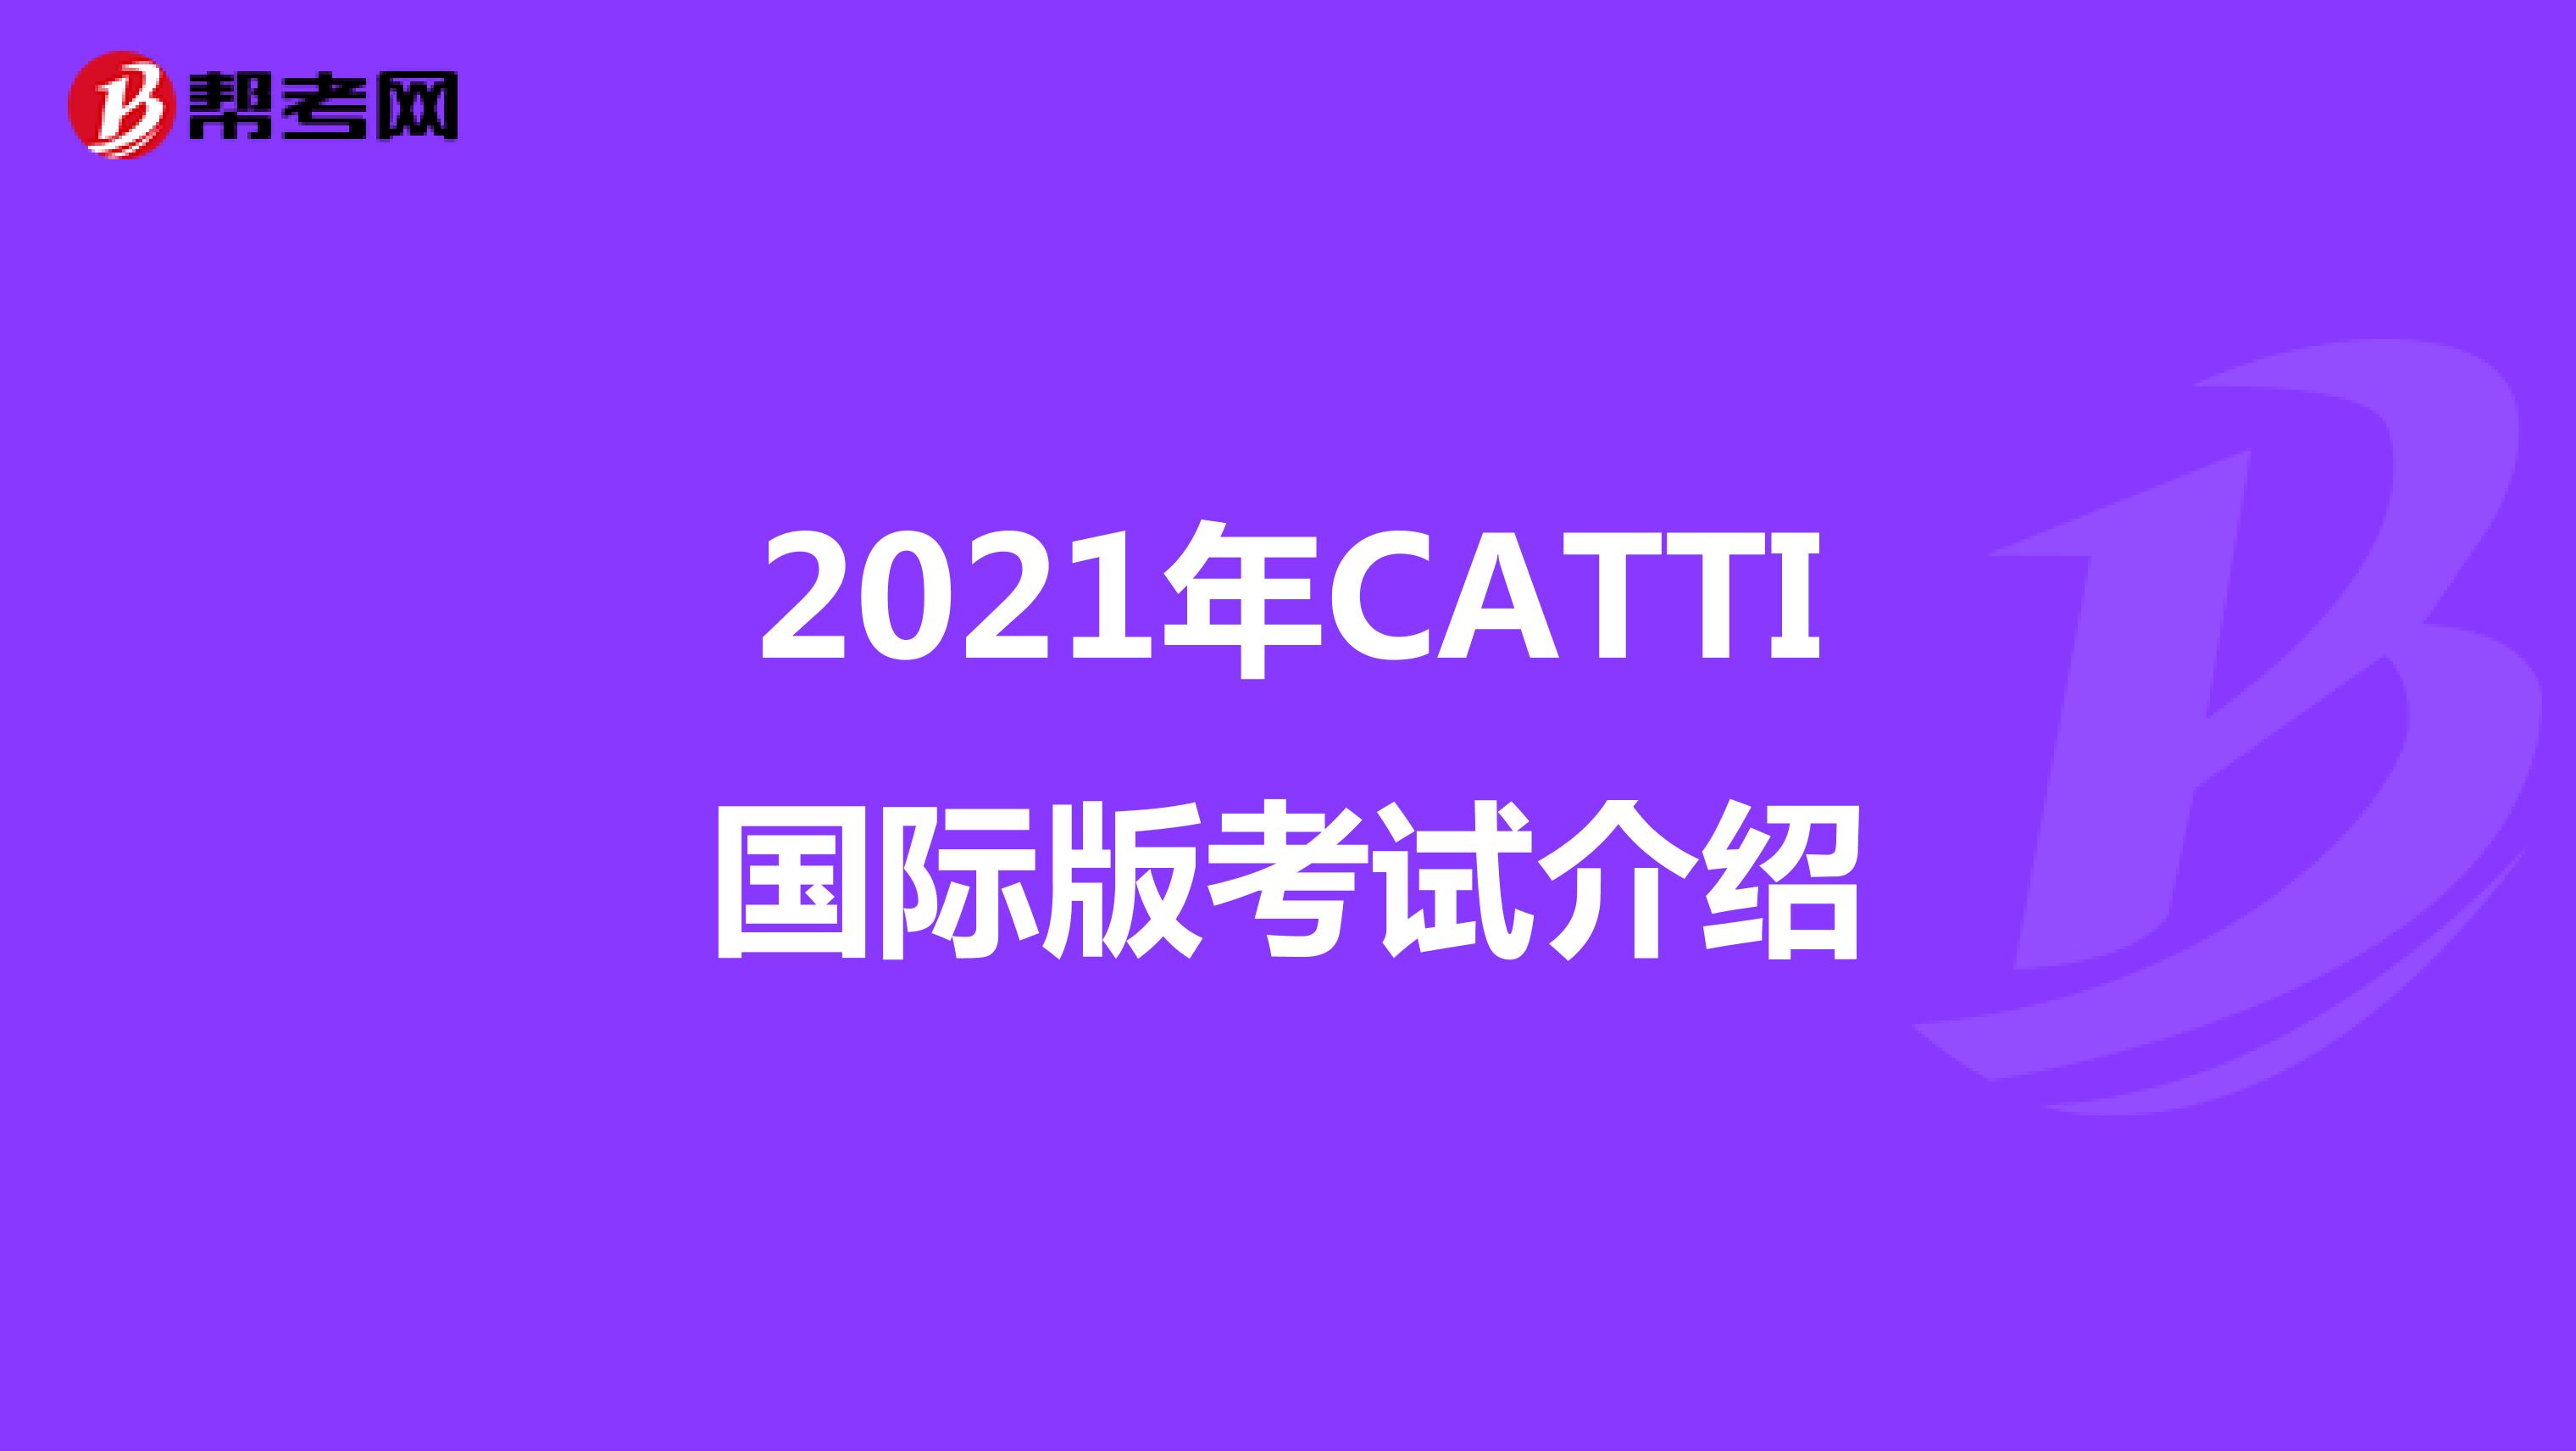 2021年CATTI国际版考试介绍